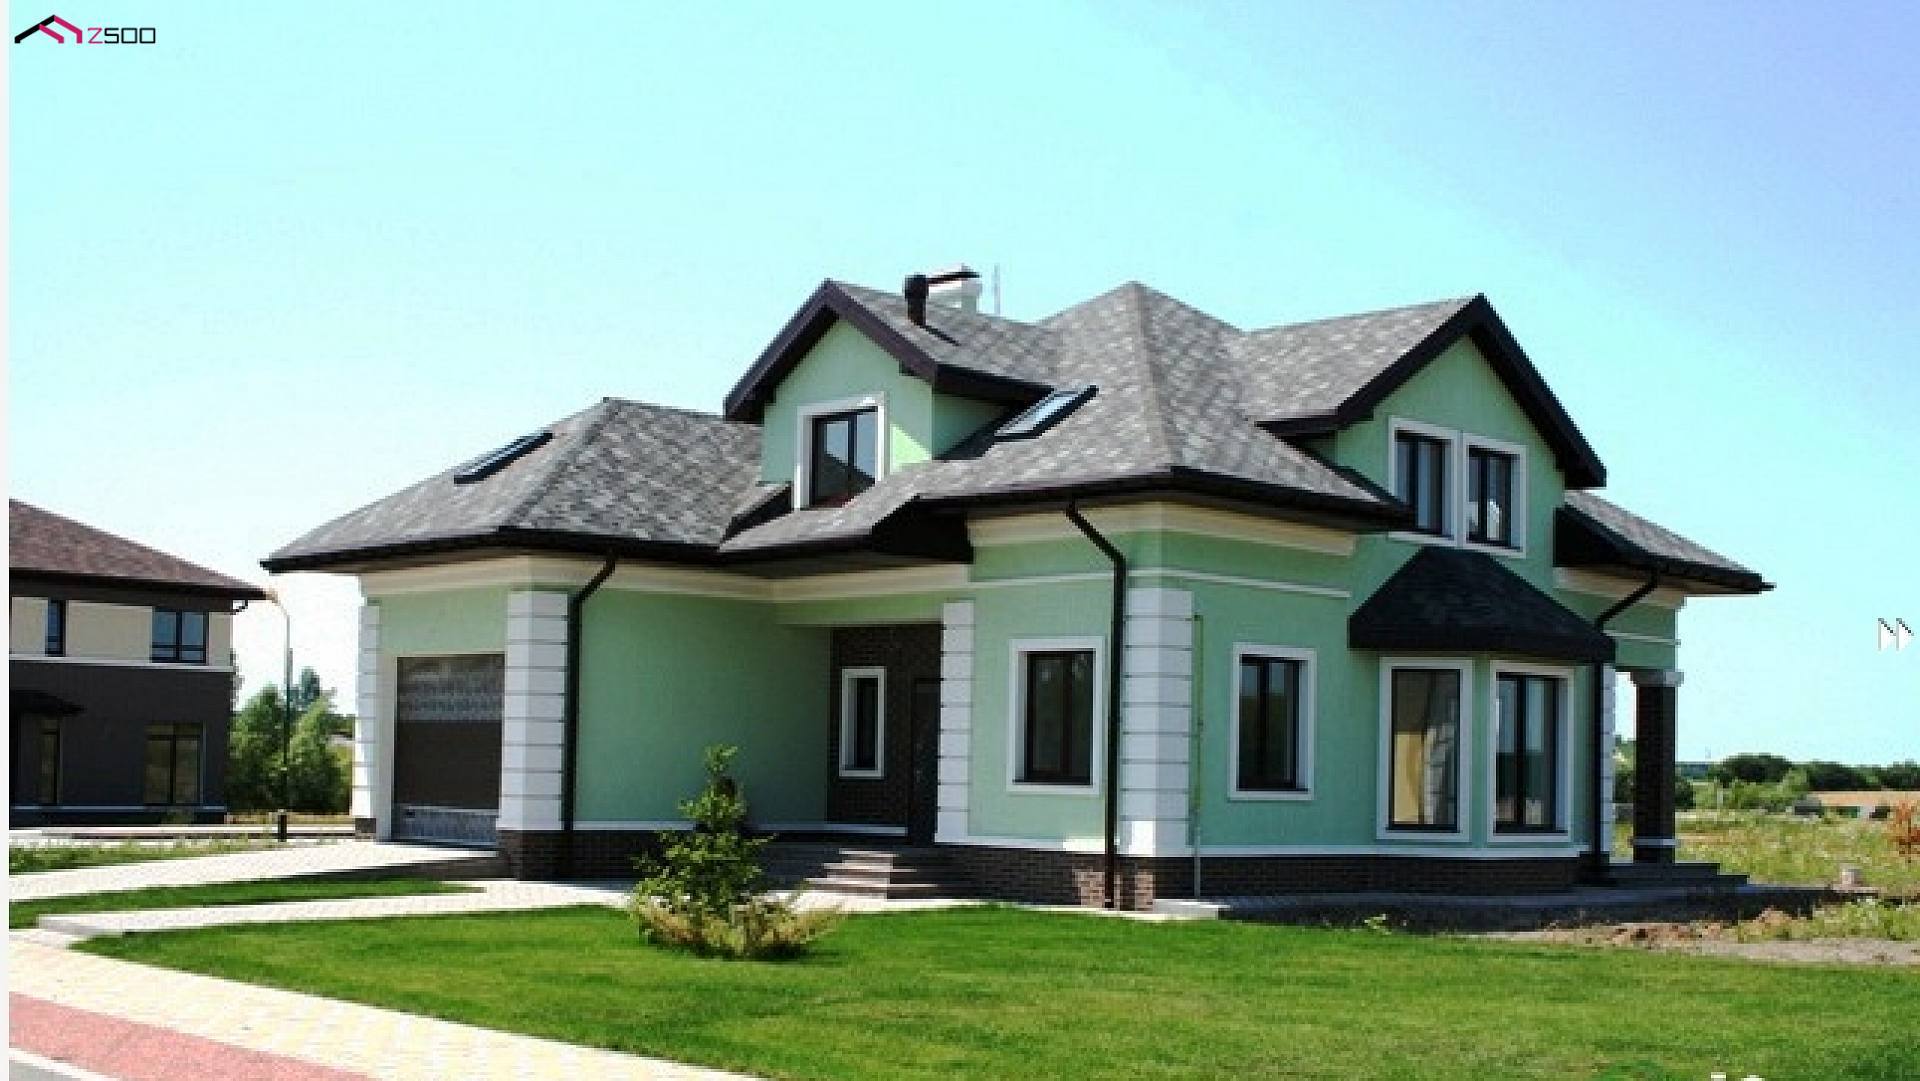 Покрасить дом в зеленый цвет. Цвета домов. Цветовые решения фасадов домов. Дом с коричневой крышей. Окрашенные фасады домов.